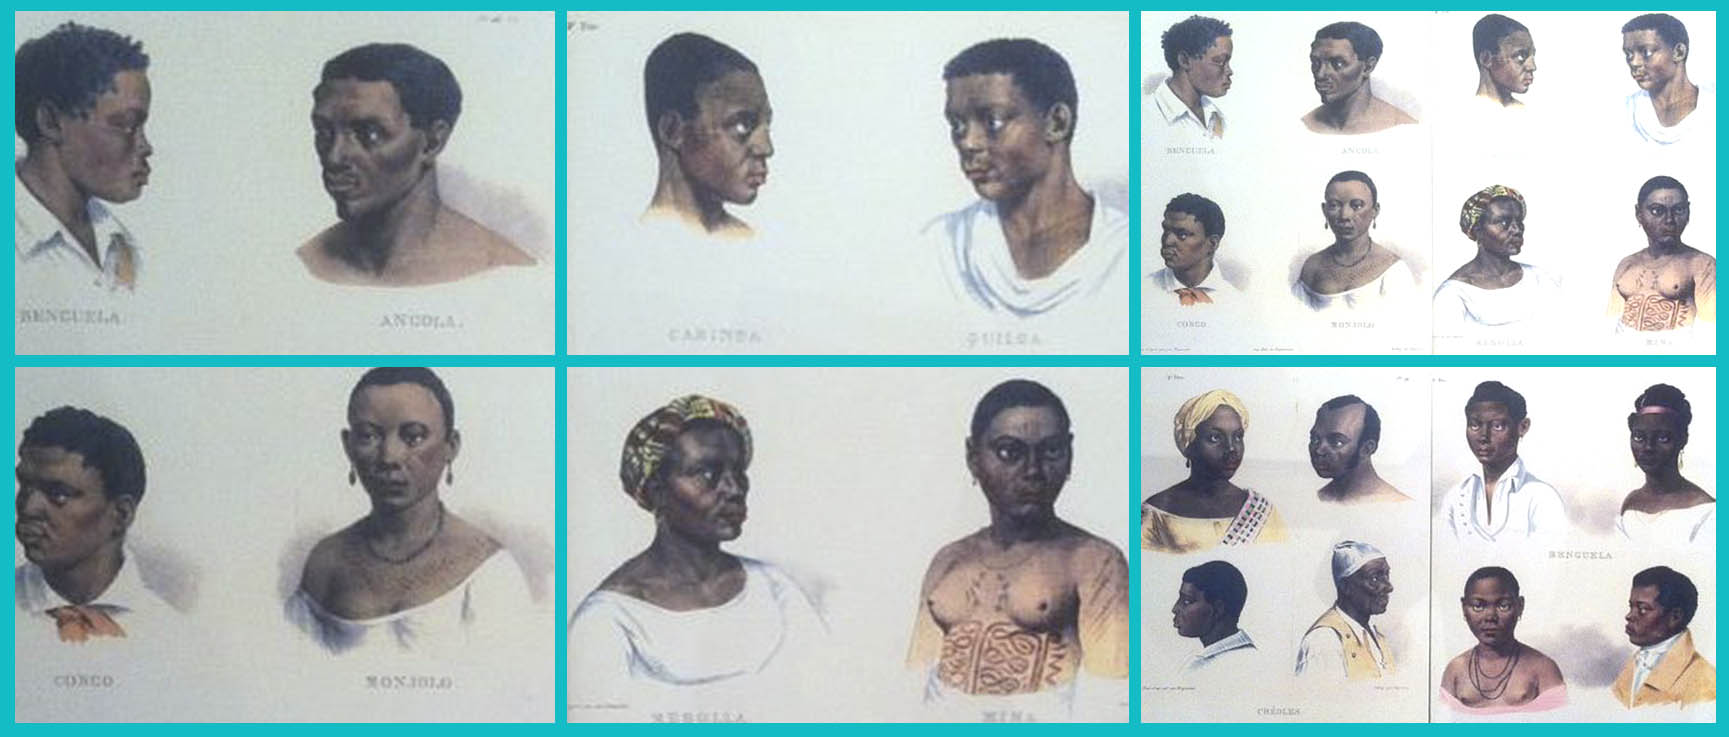 Grupos étnicos linguísticos vindos da África para o Brasil. Quadro exposto no Museu Afro Brasil, São Paulo.